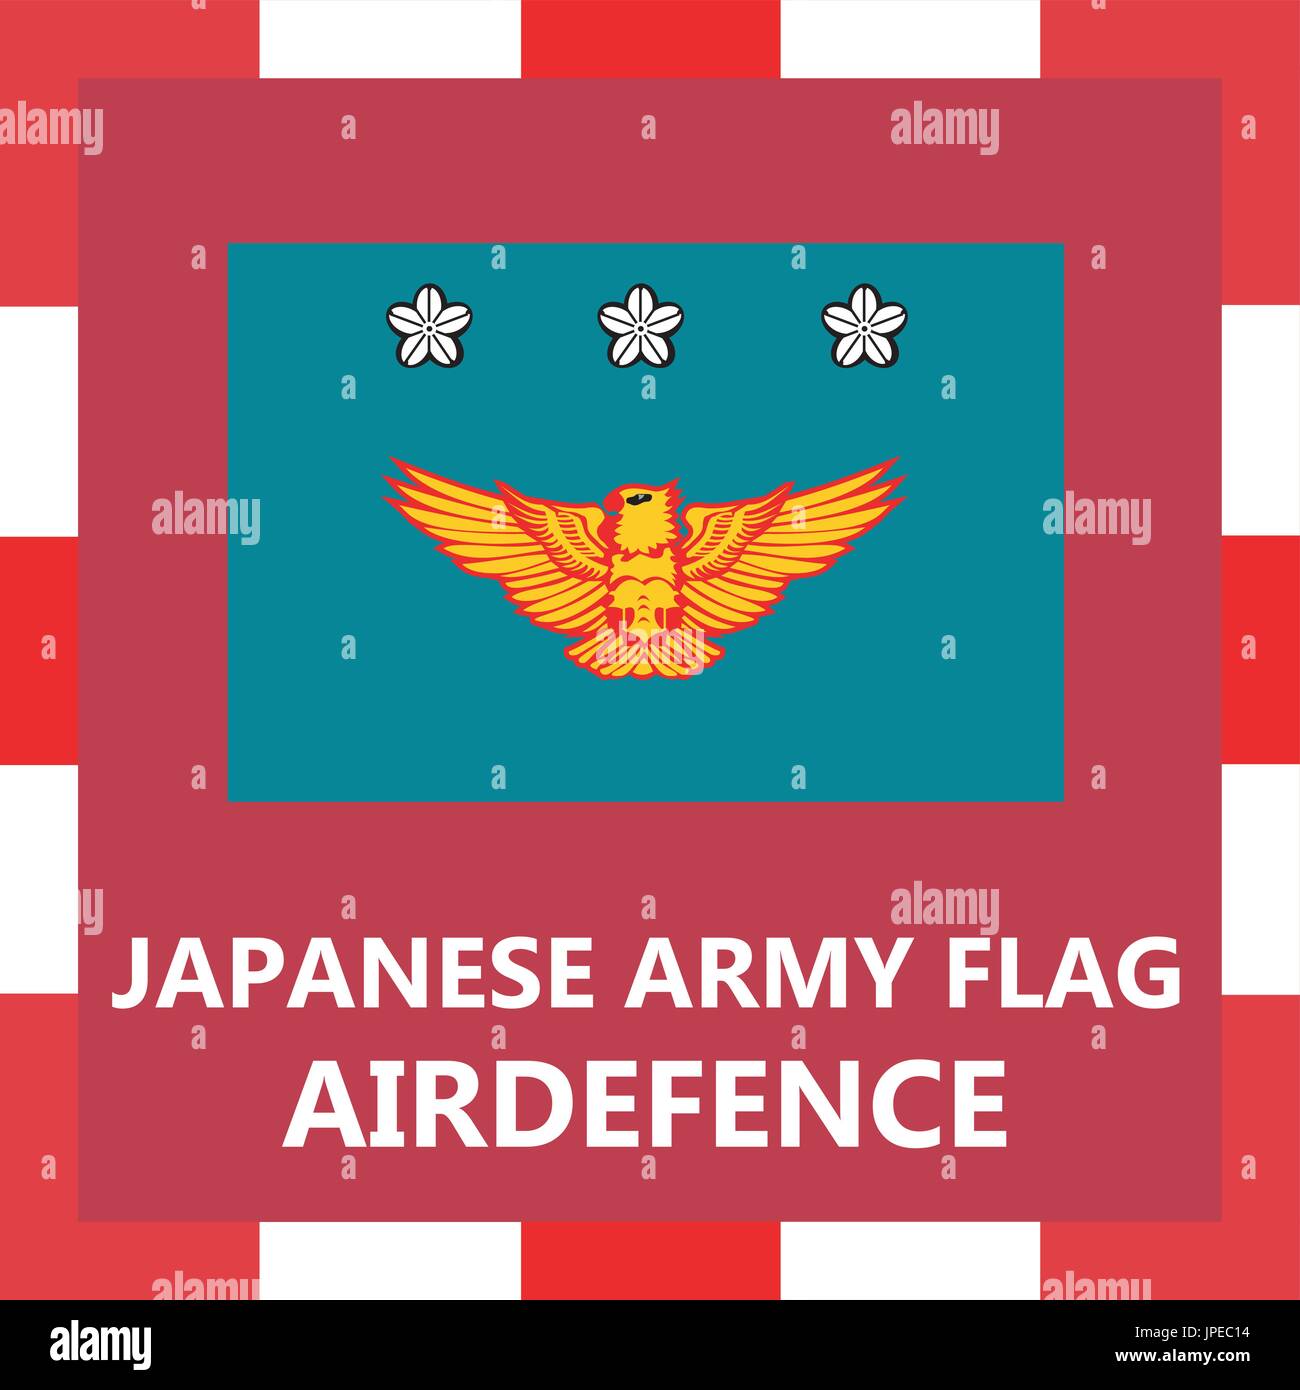 Drapeau de l'armée japonaise - Airdefense Illustration de Vecteur